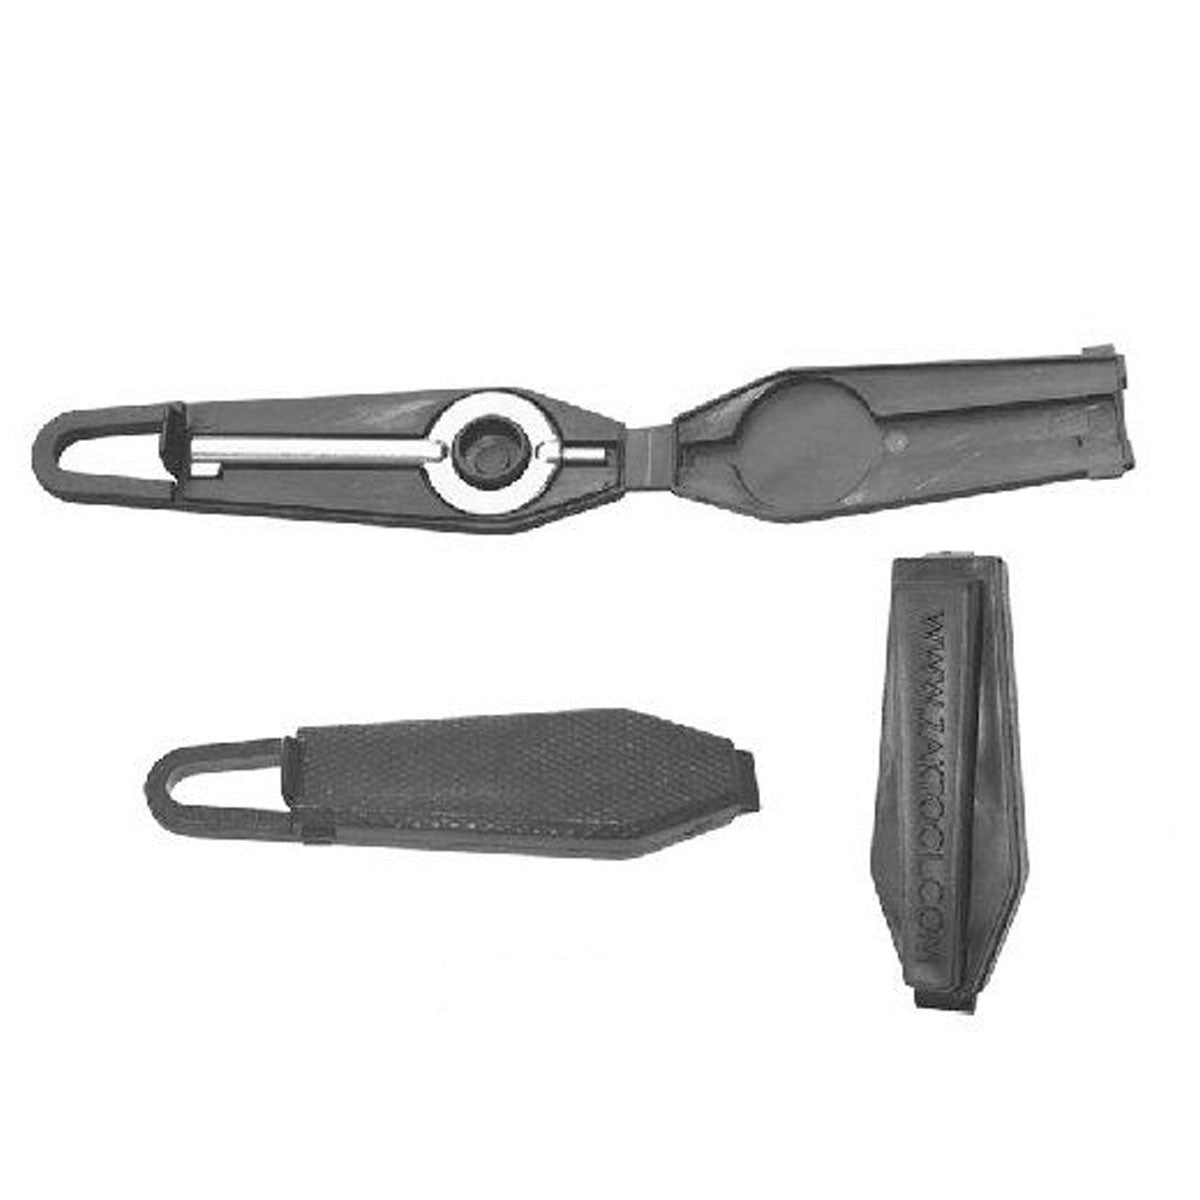 Zak Tool ZT99 Survival Cuff Key Set Handcuffs and Restraints Zak Tool Tactical Gear Supplier Tactical Distributors Australia